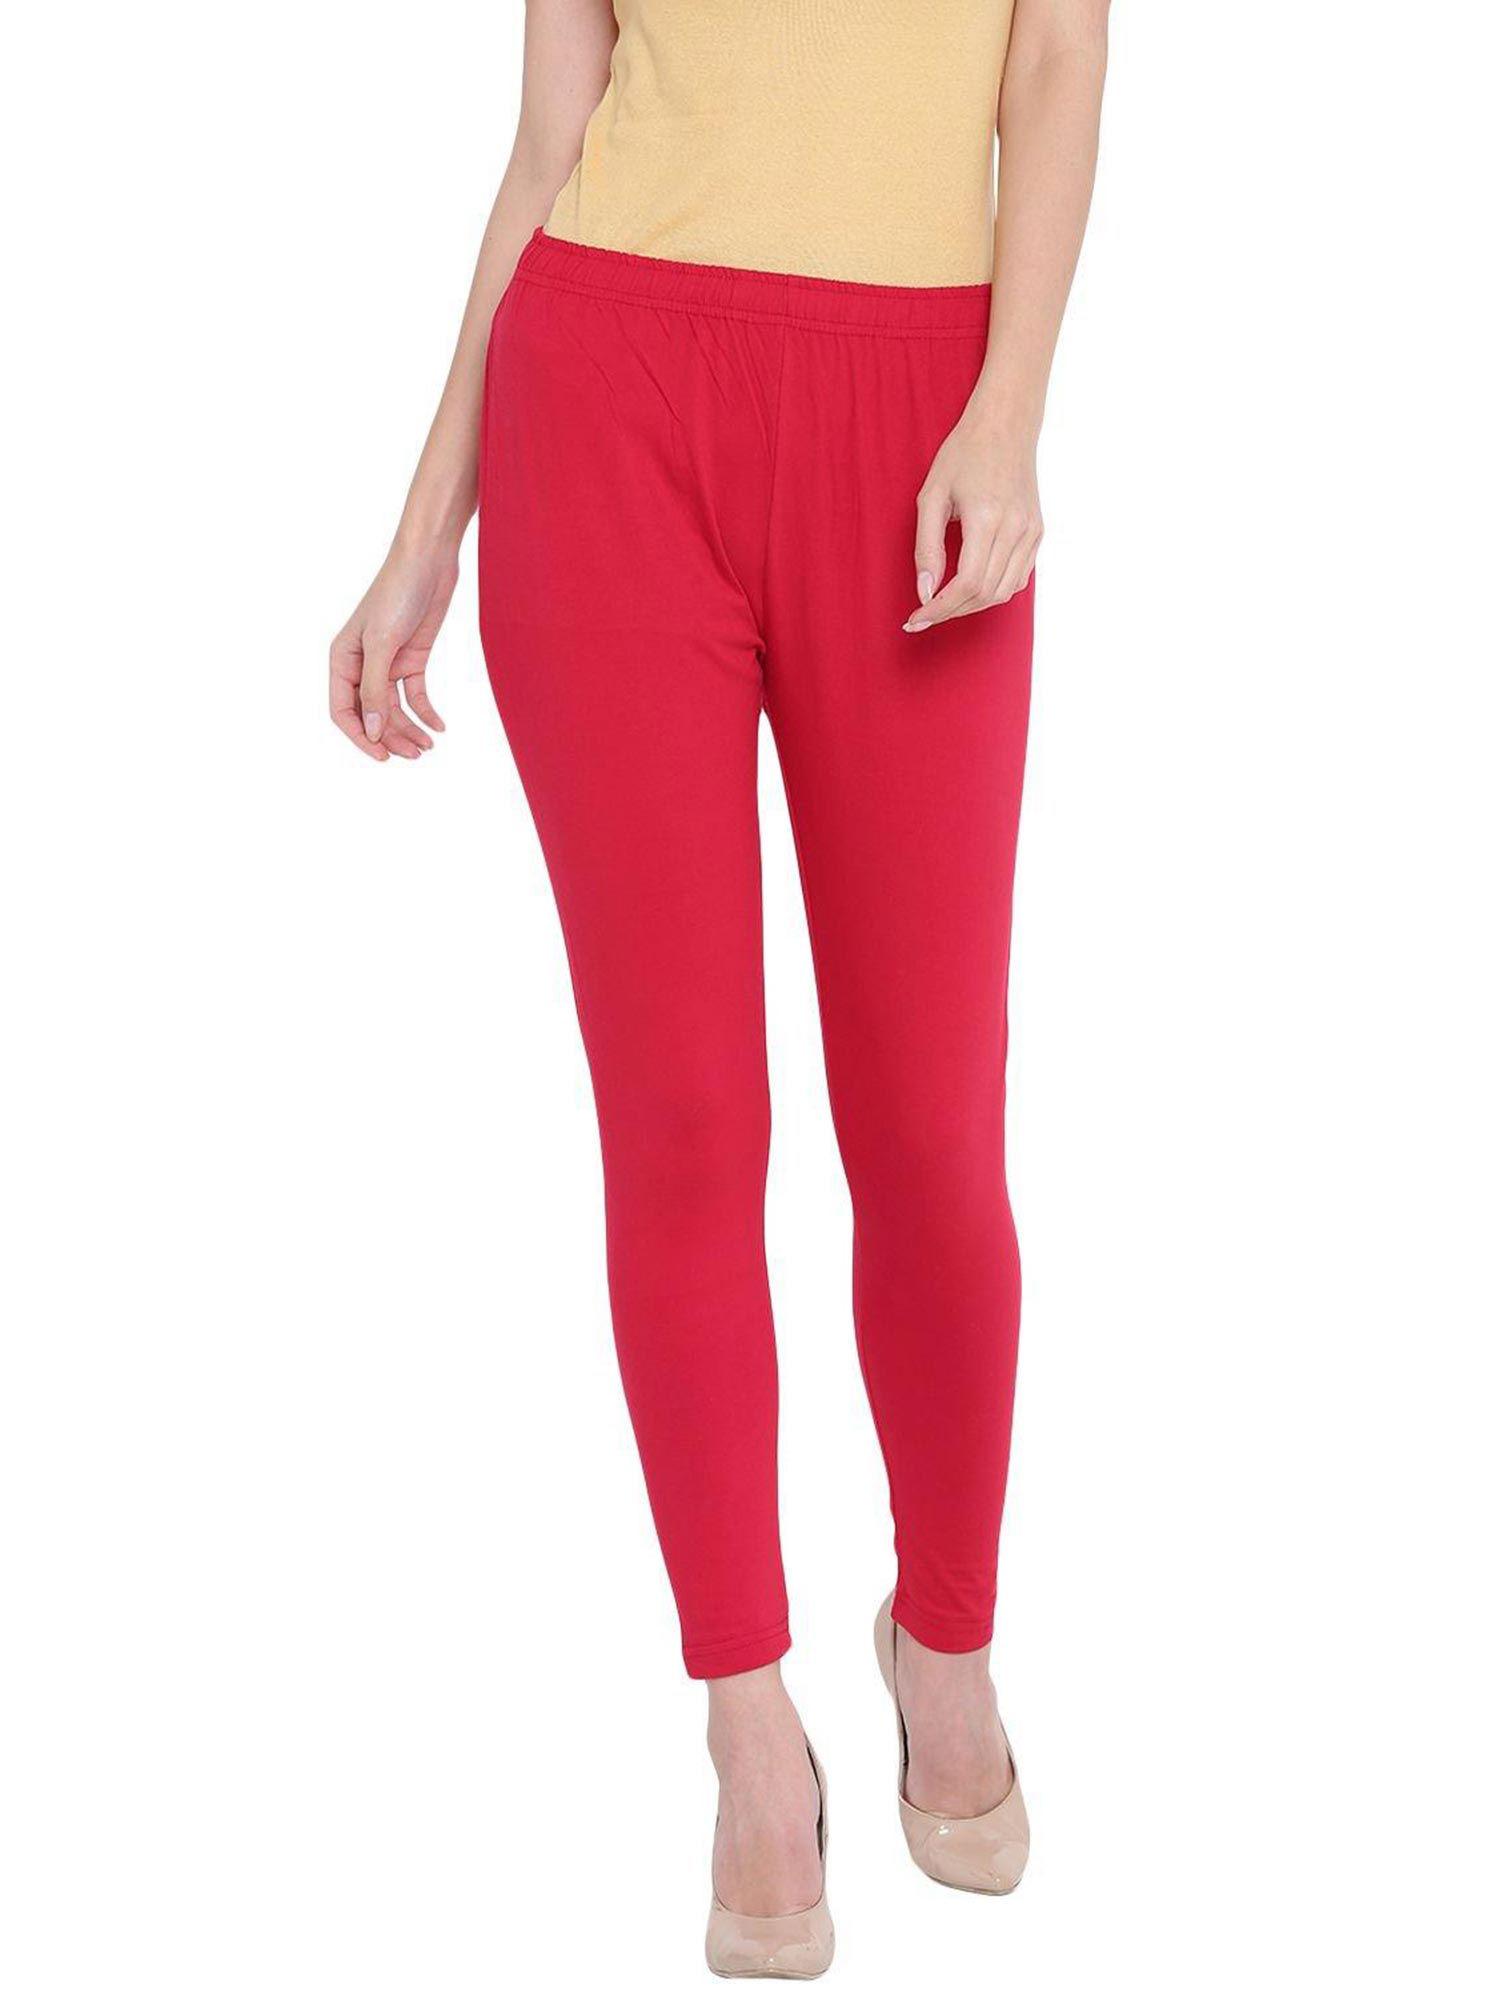 red cotton legging